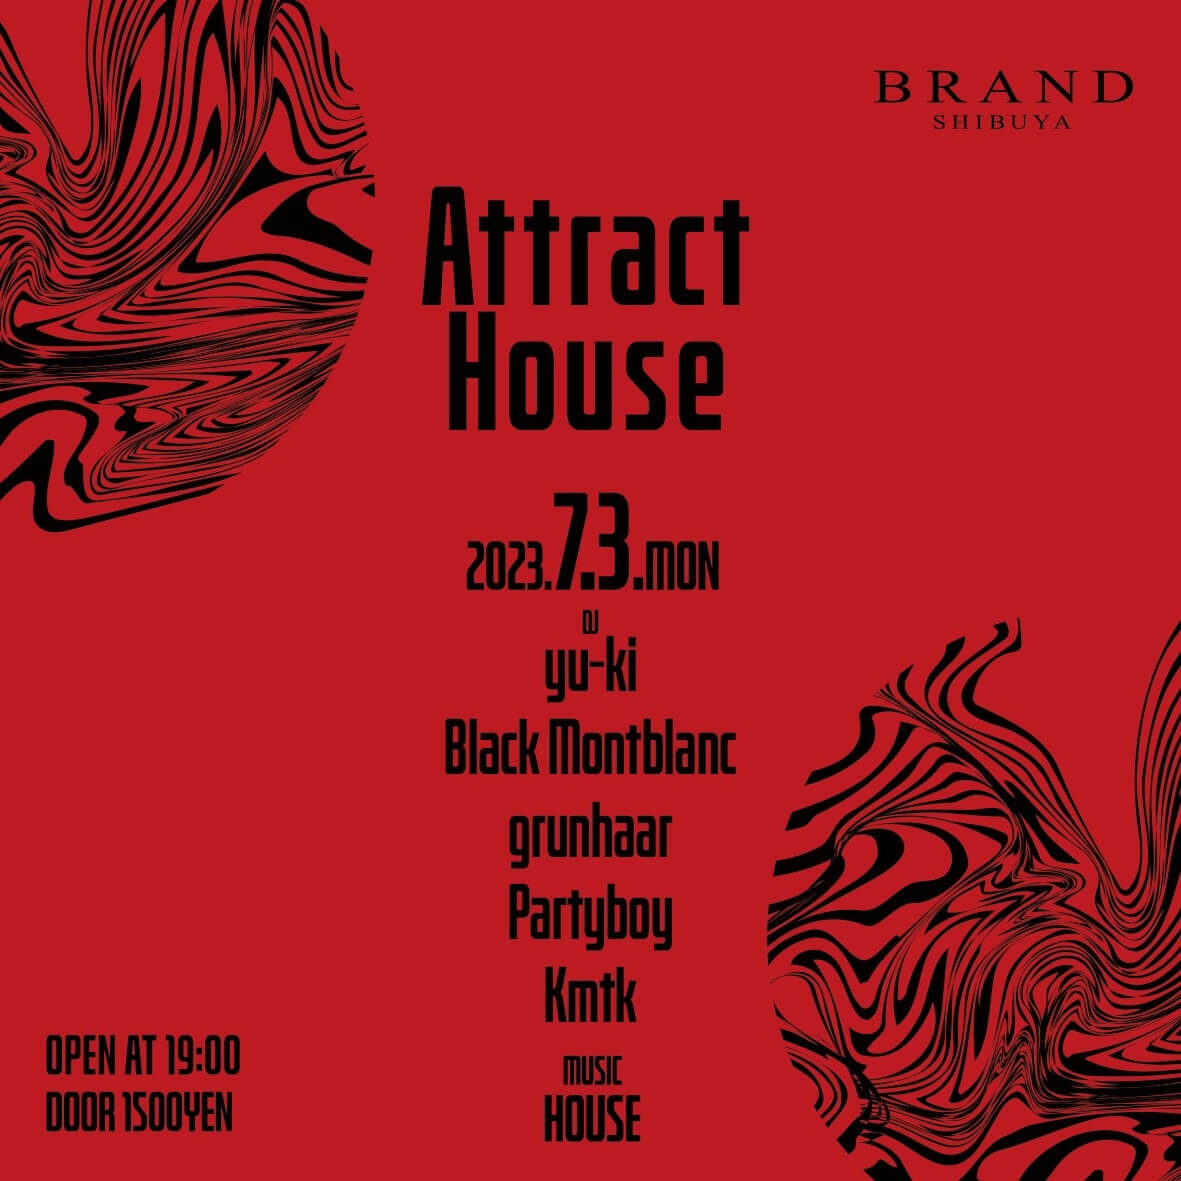 Attract House 2023年07月03日（月曜日）に渋谷 クラブのBRAND SHIBUYAで開催されるHOUSEイベント